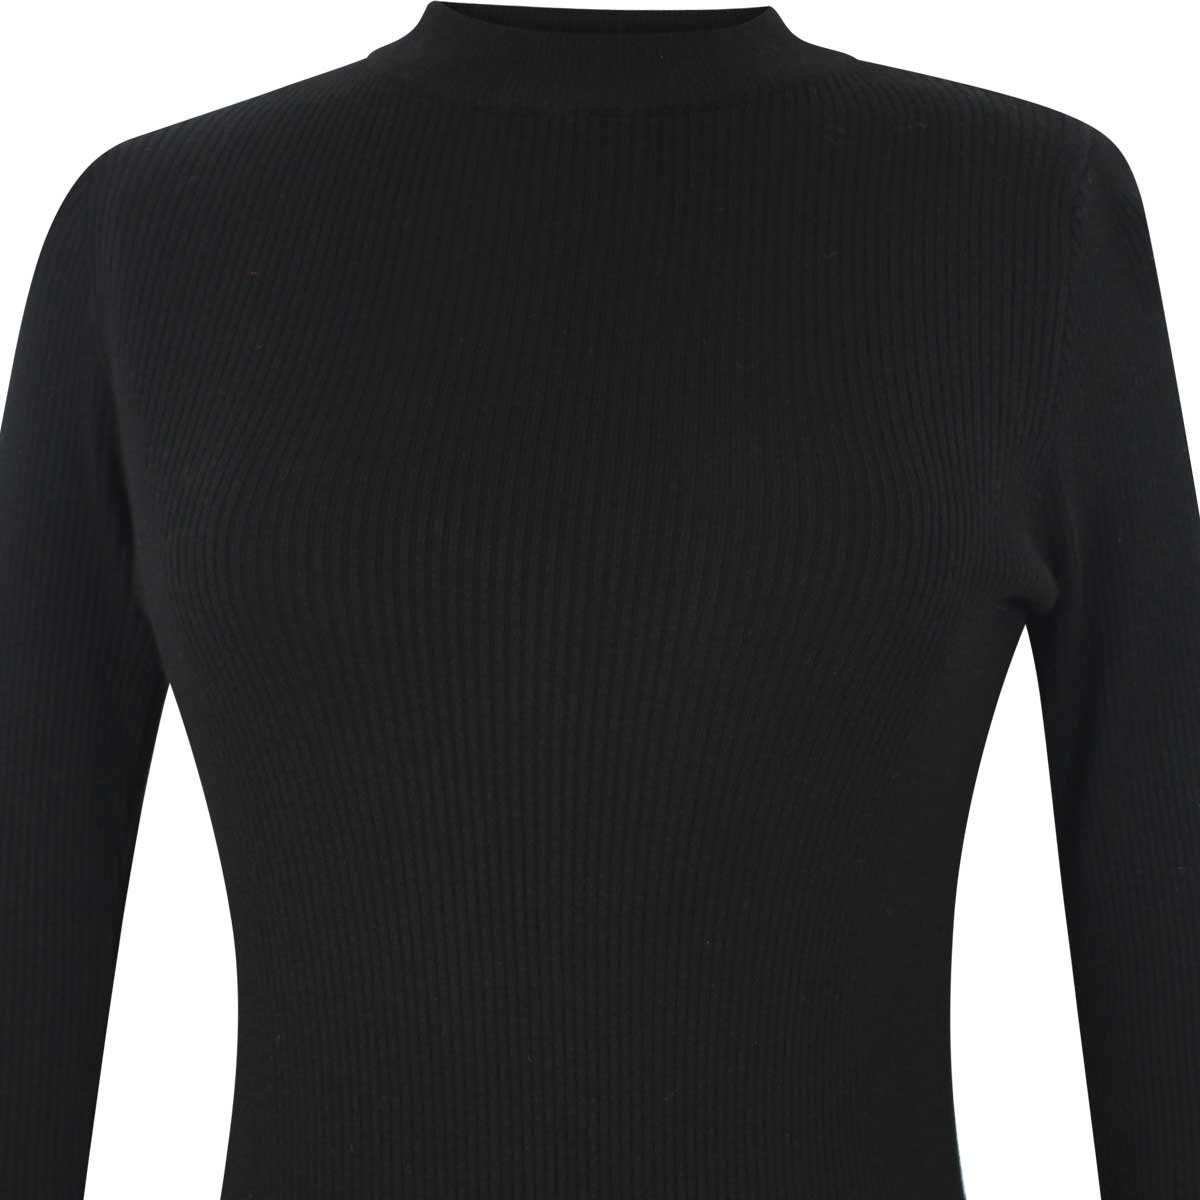 Suéter negro de manga larga elle - Sears